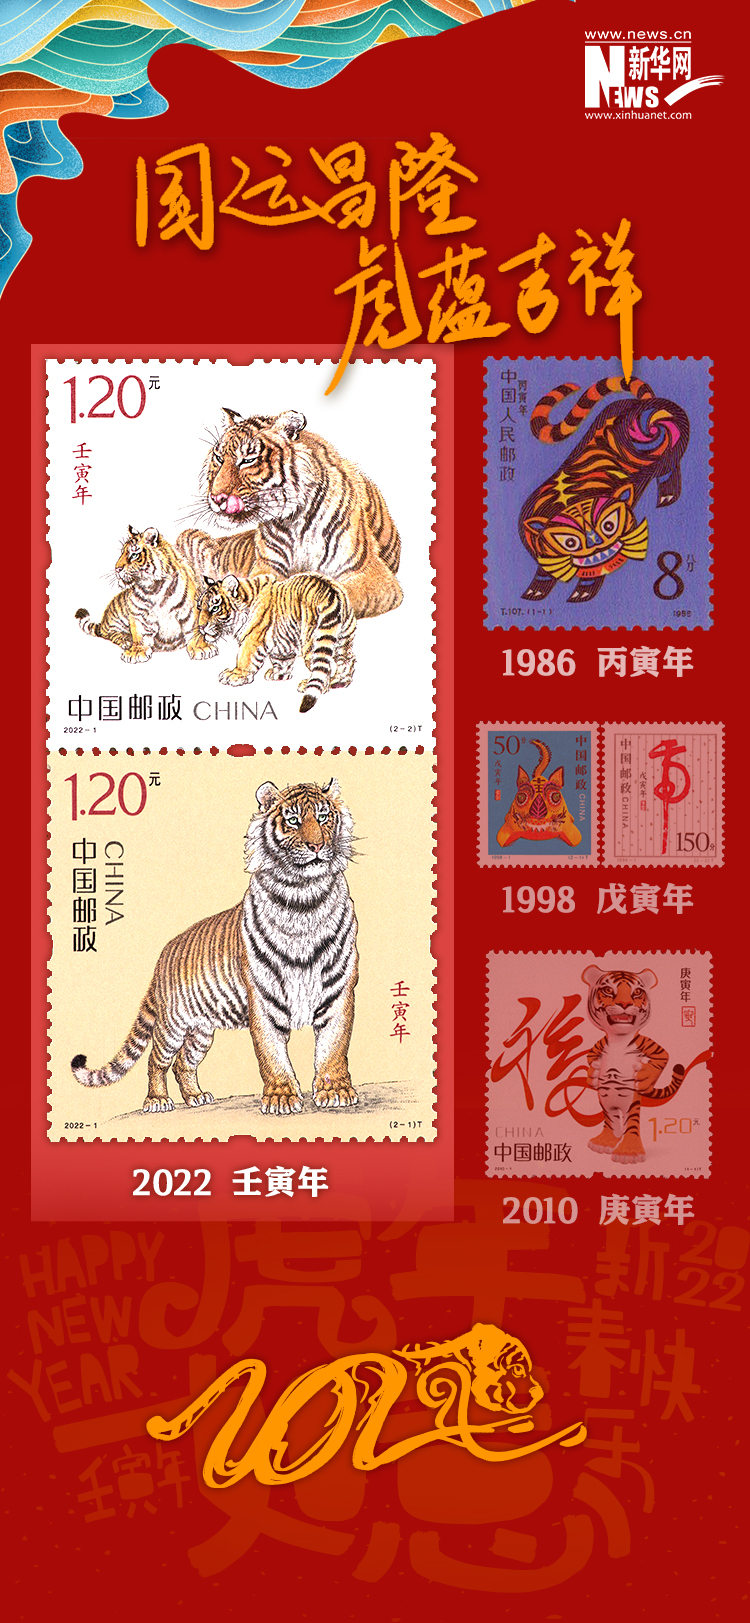 据了解,与以往三轮寅虎生肖邮票不同,冯大中设计的虎的形象更为写实